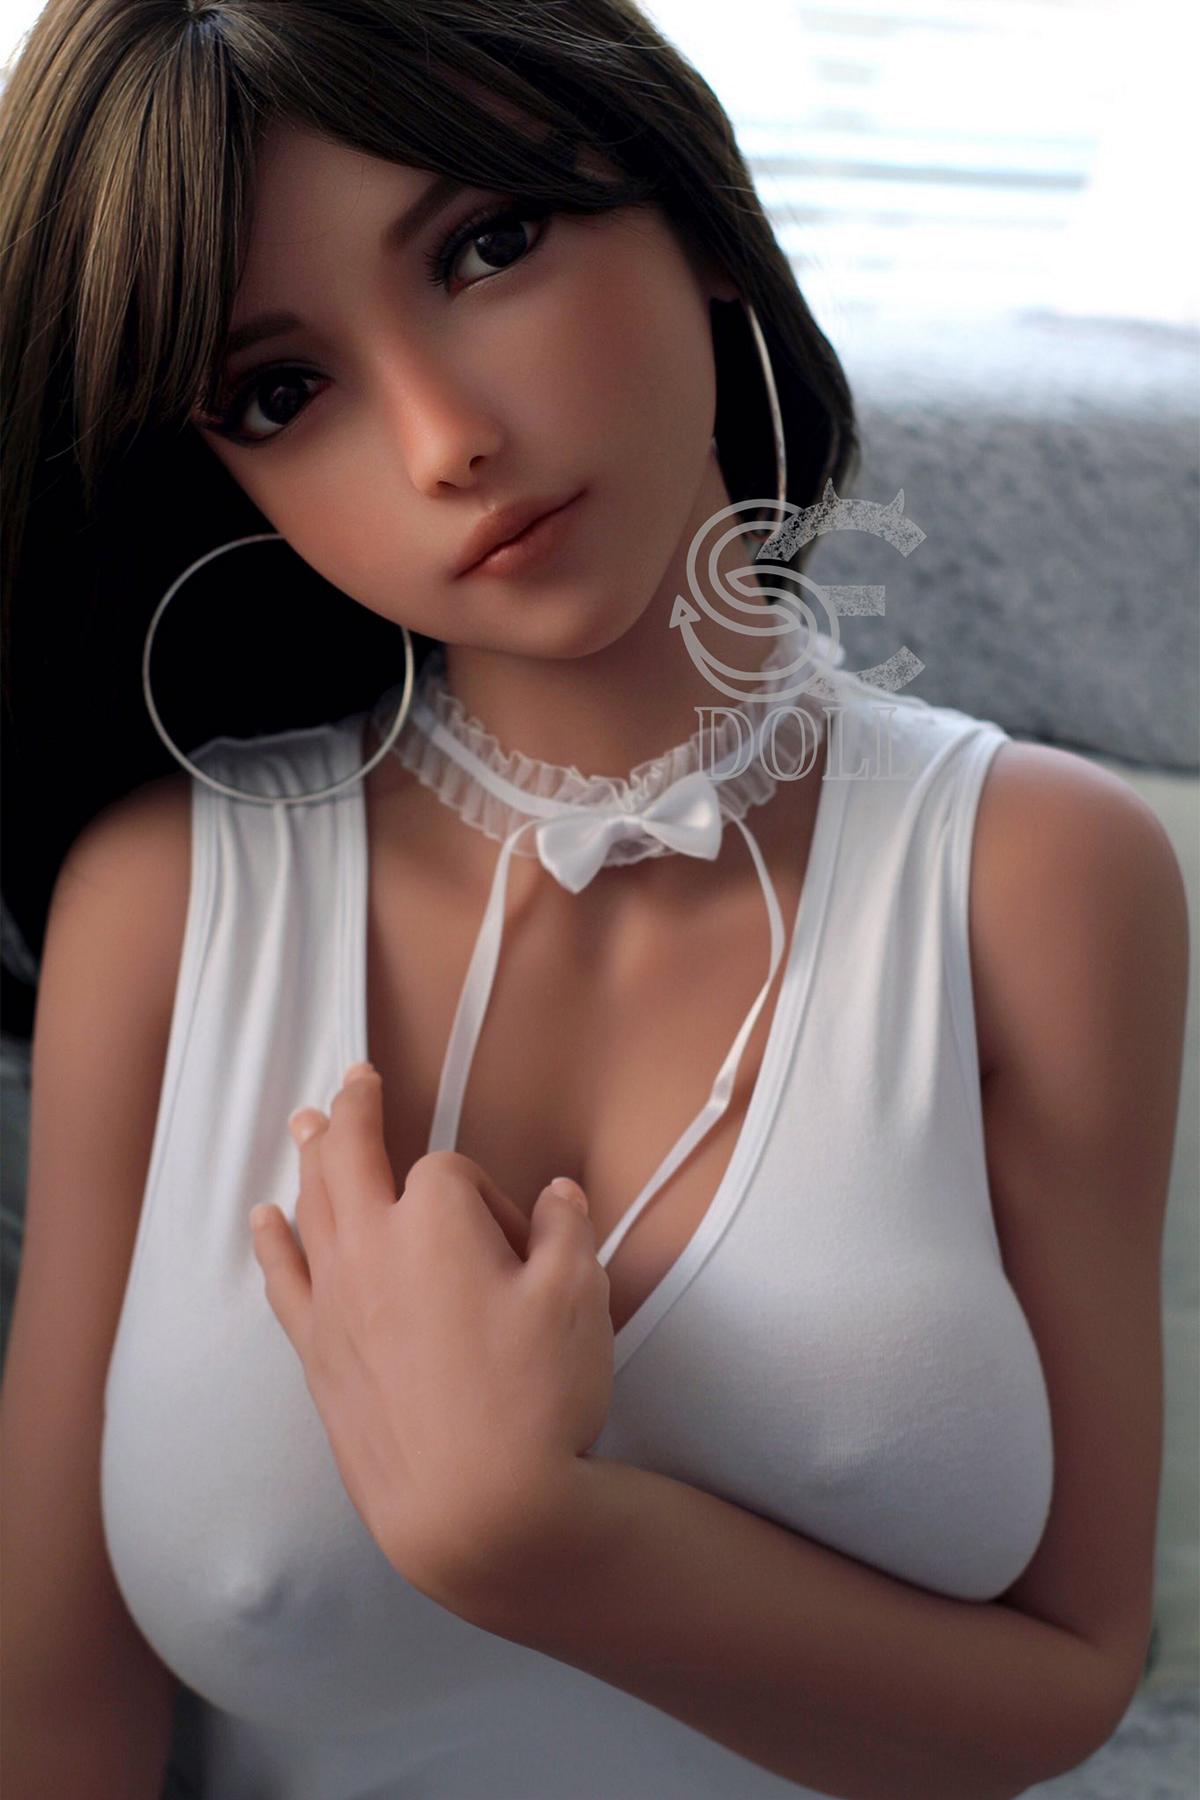 Sex doll Elanie | Cute teen sexdoll with big boobs